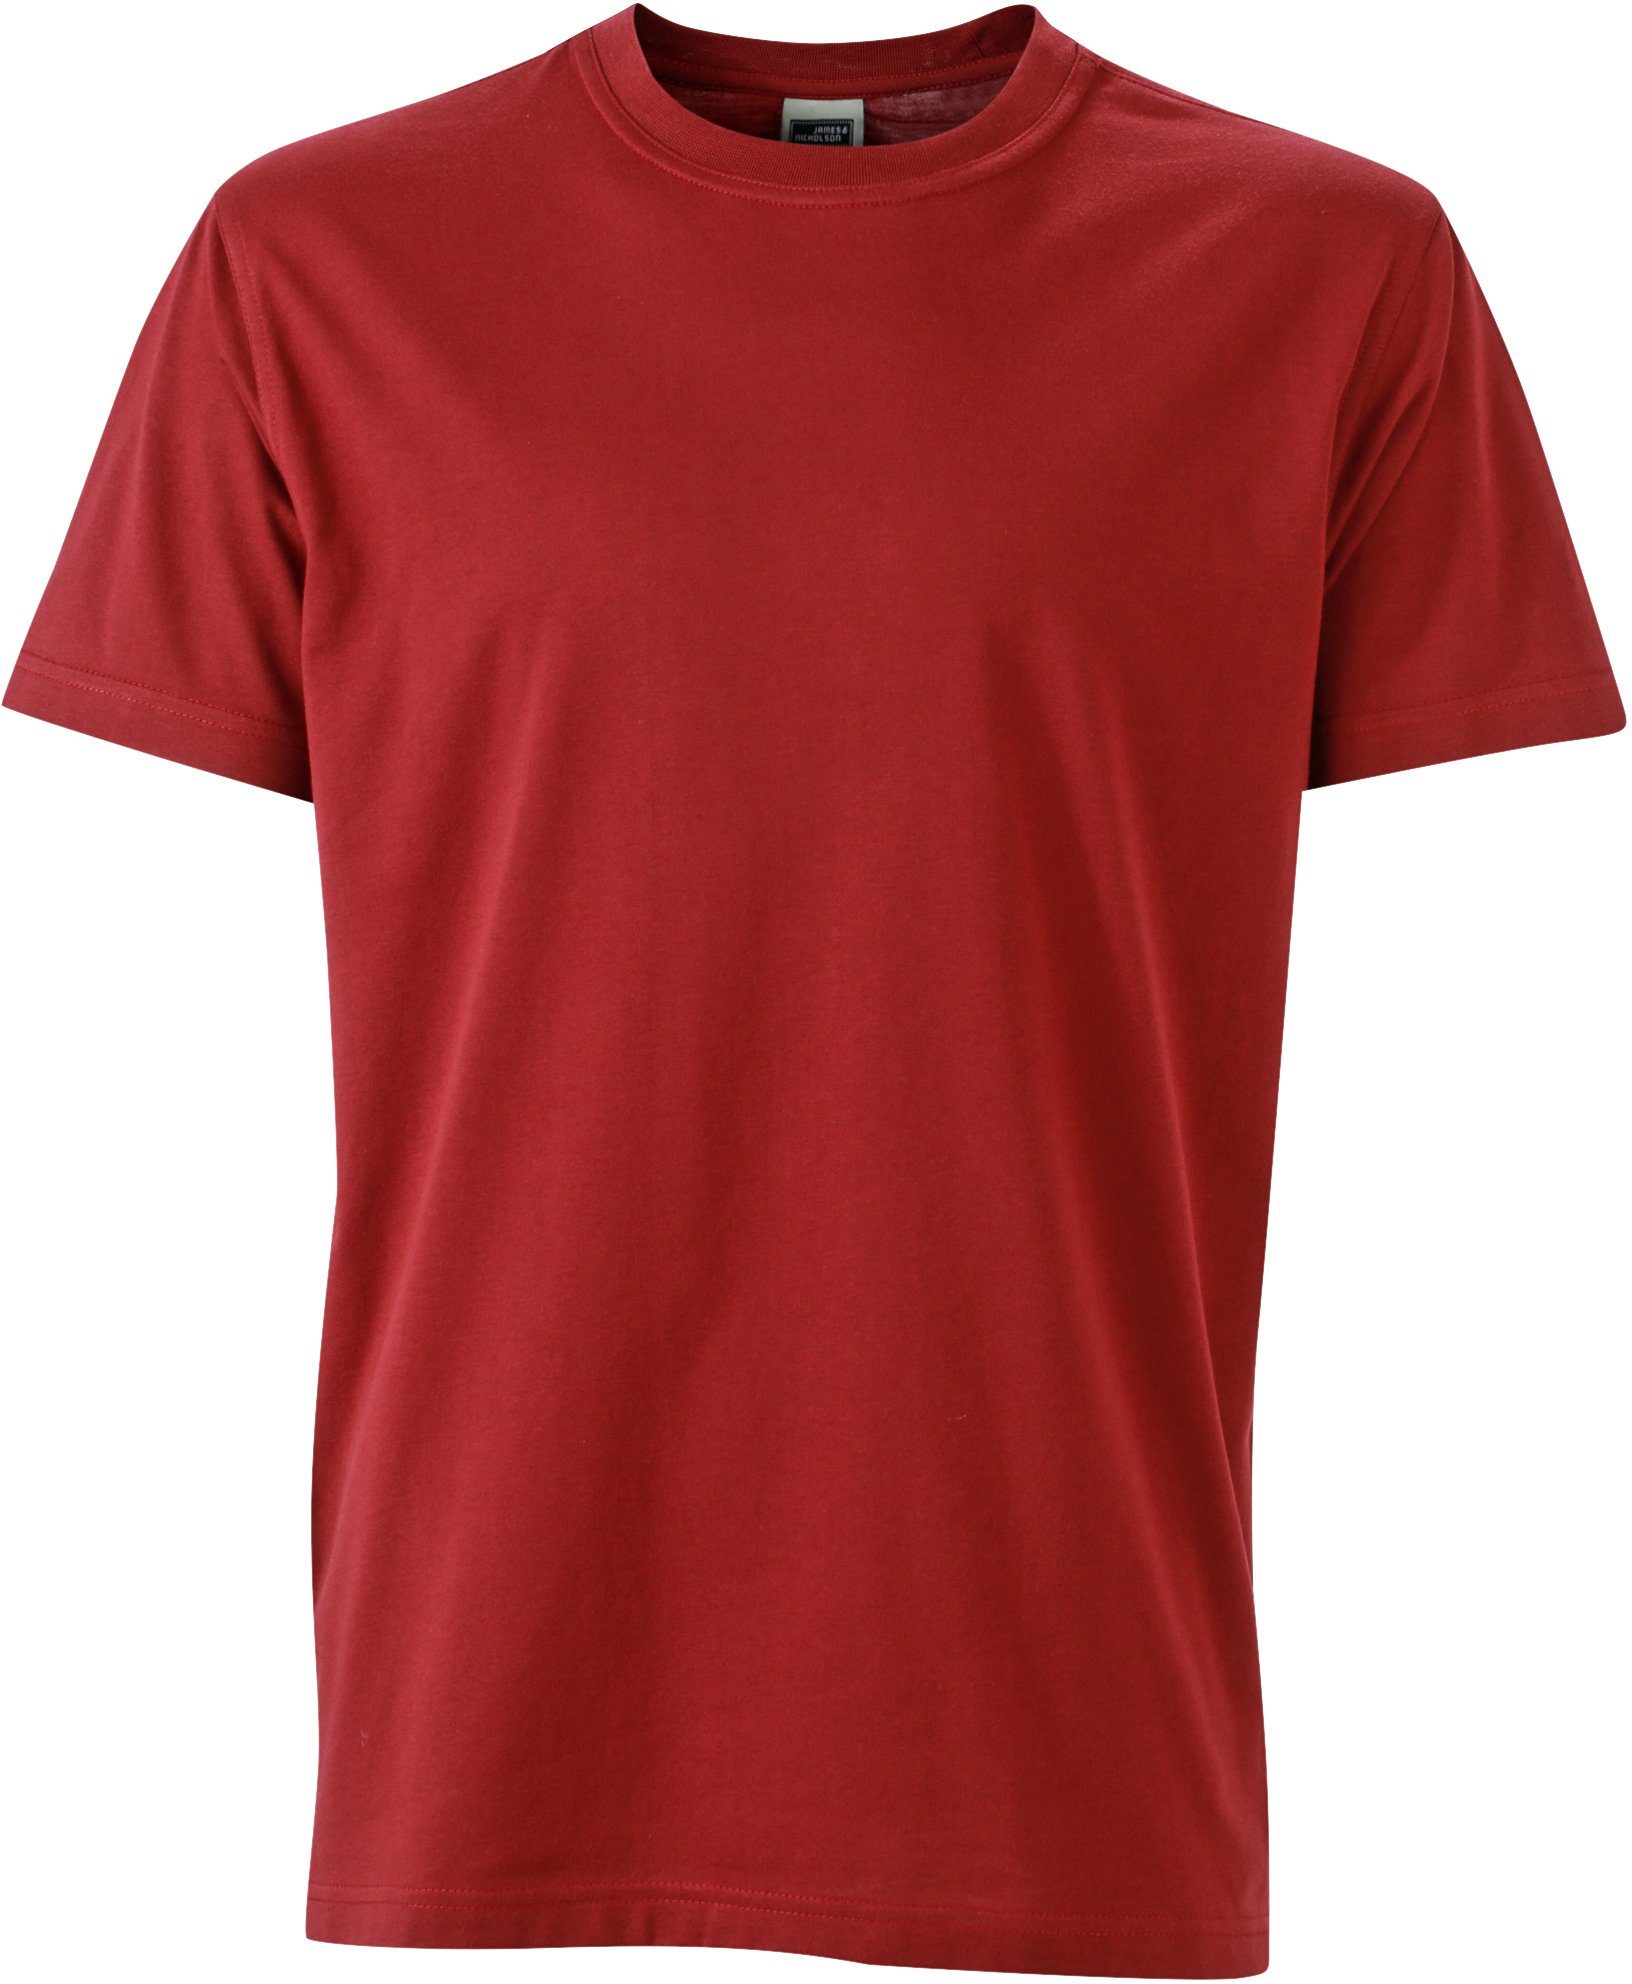 James & FaS50838 Größen Workwear T-Shirt Nicholson auch großen T-Shirt in WINE